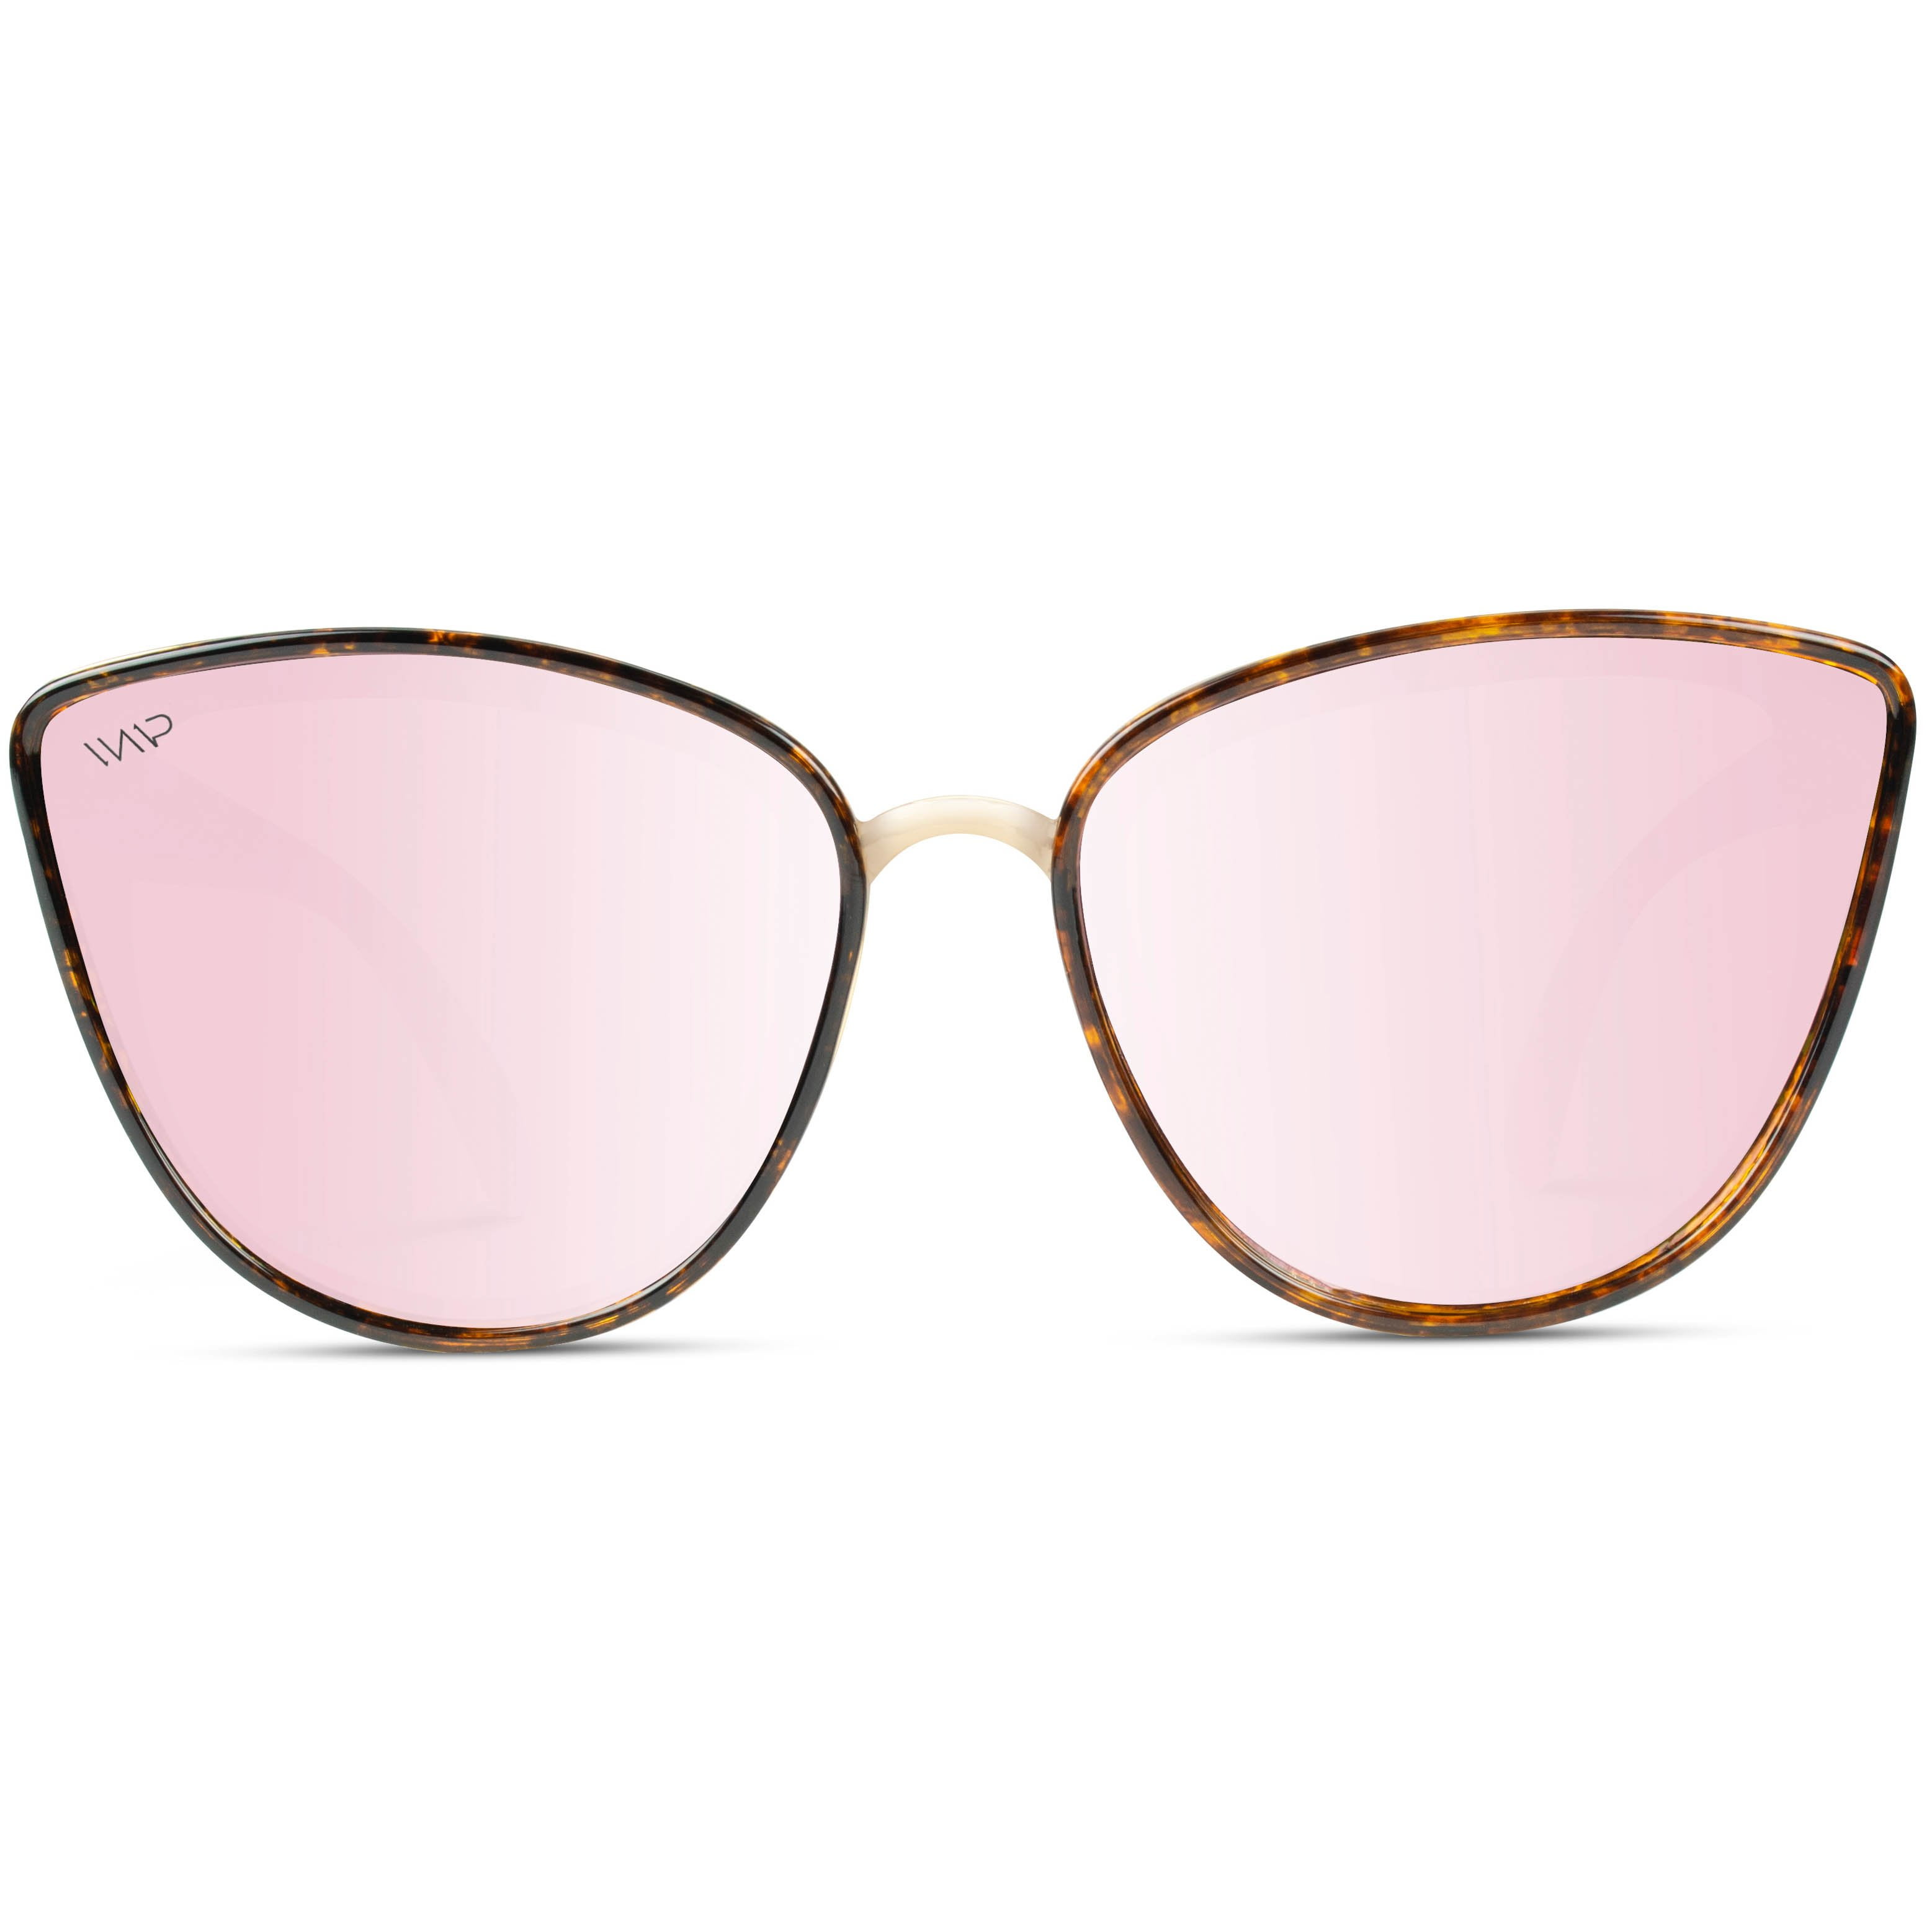 Designer Cat Eye Oversized Sunglasses Metal Frame Mirrored Lens Women Fashion 